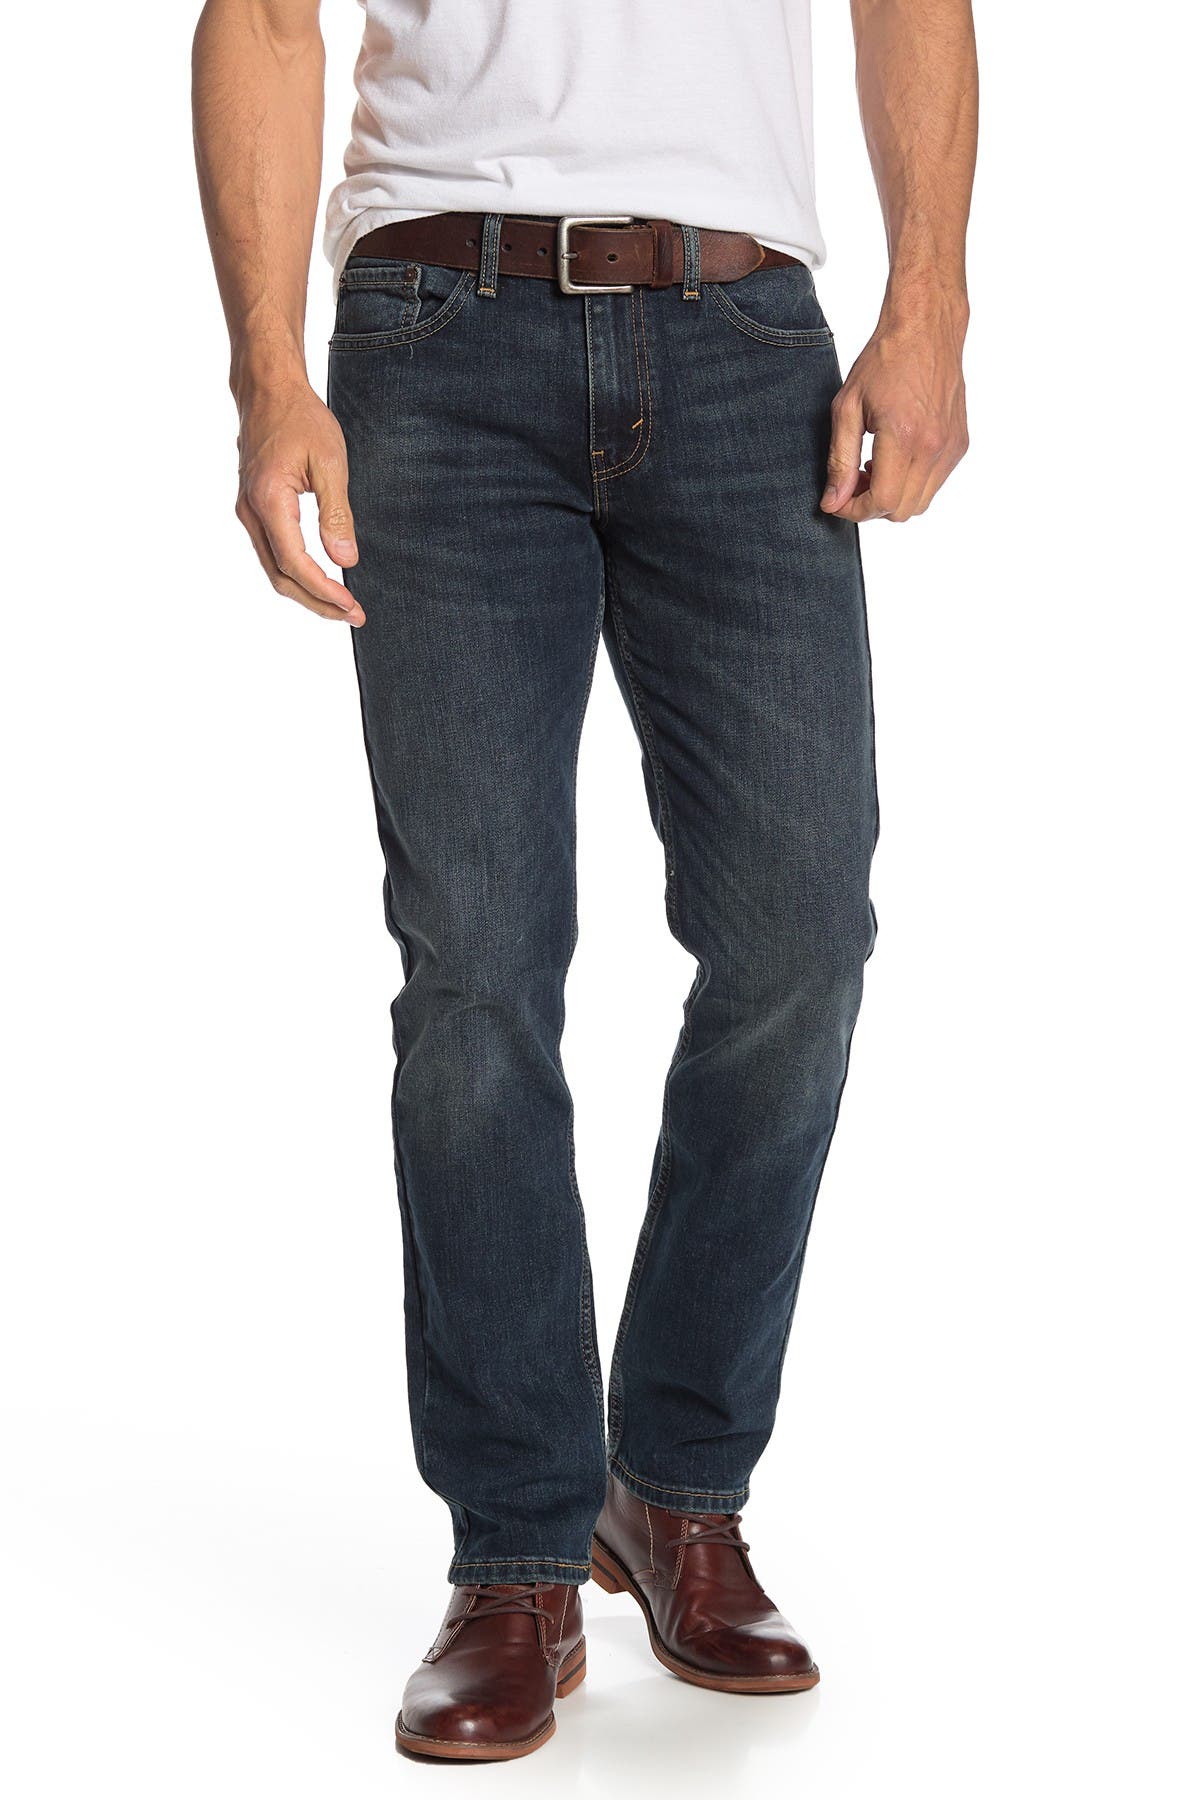 levis 511 jeans 34x30